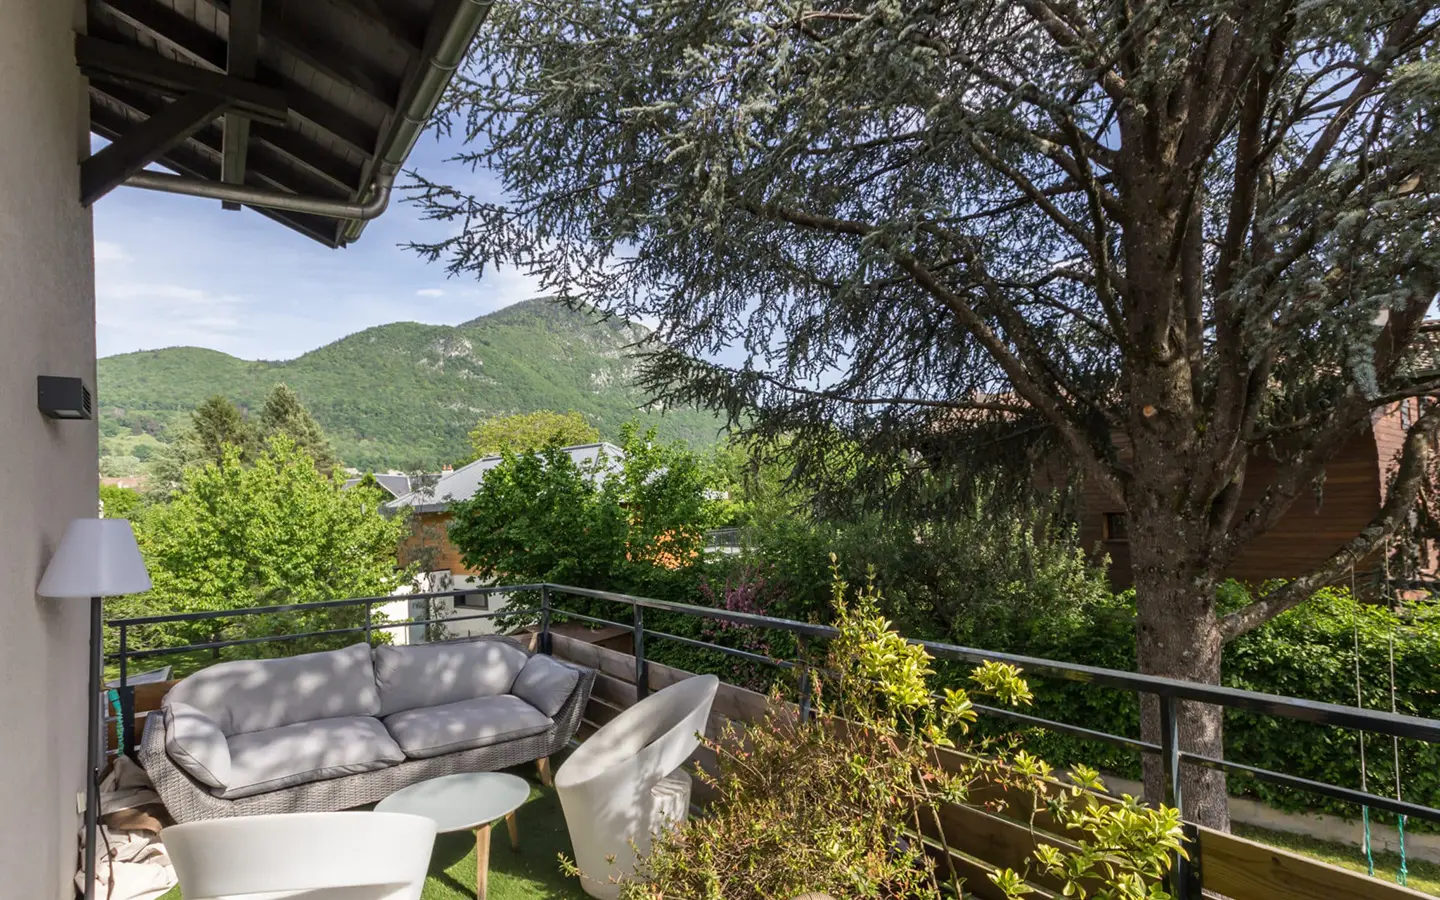 Achat immobilier appartement Annecy-le-vieux terrasse vue montagne